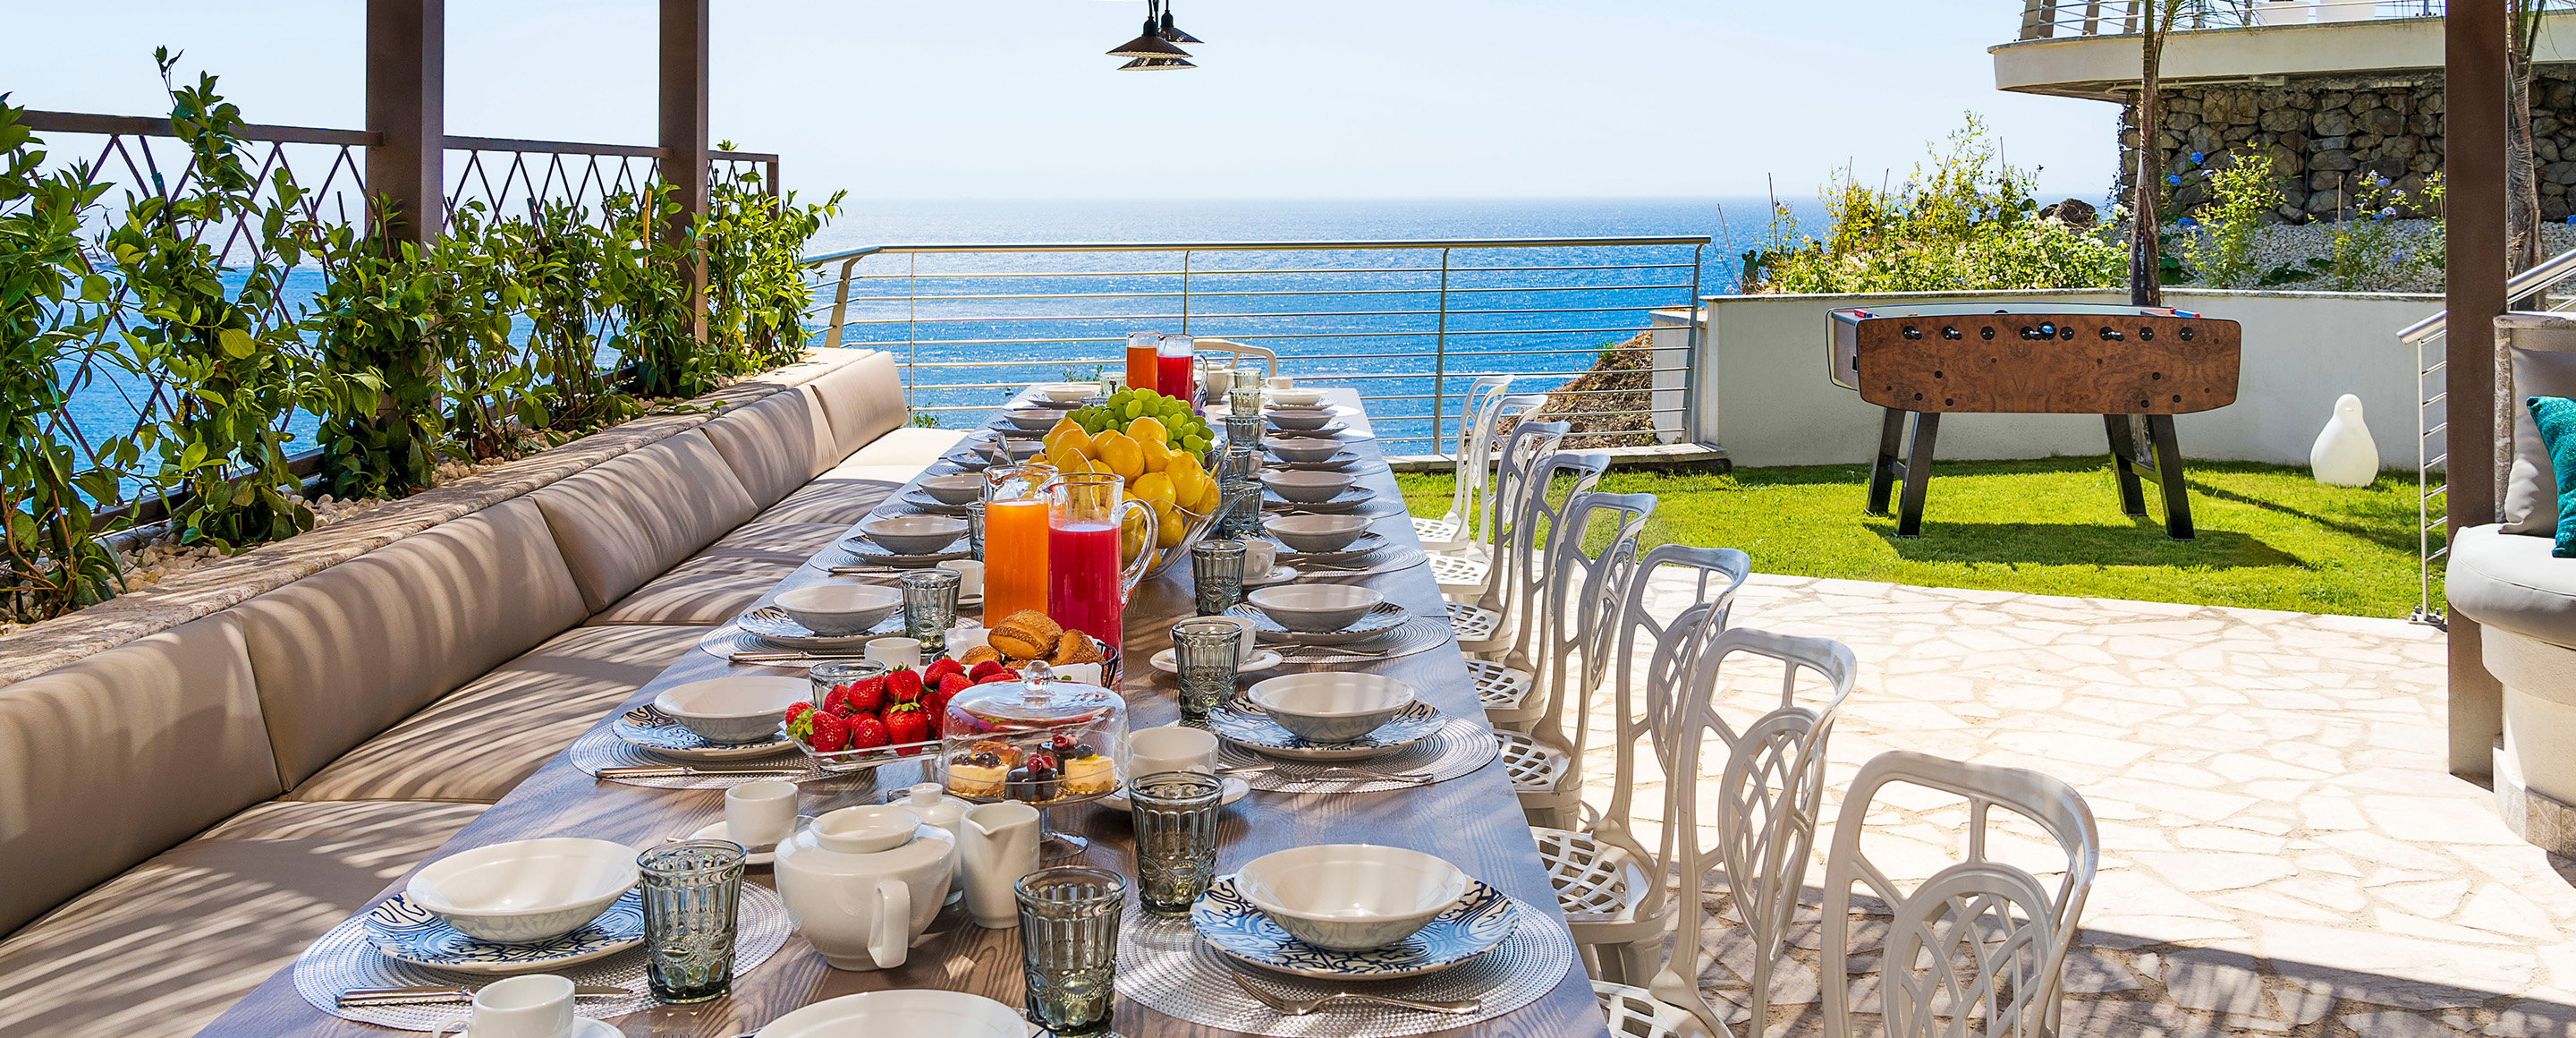 I nostri servizi concierge per vivere in totale relax la tua vacanza in villa in Sicilia